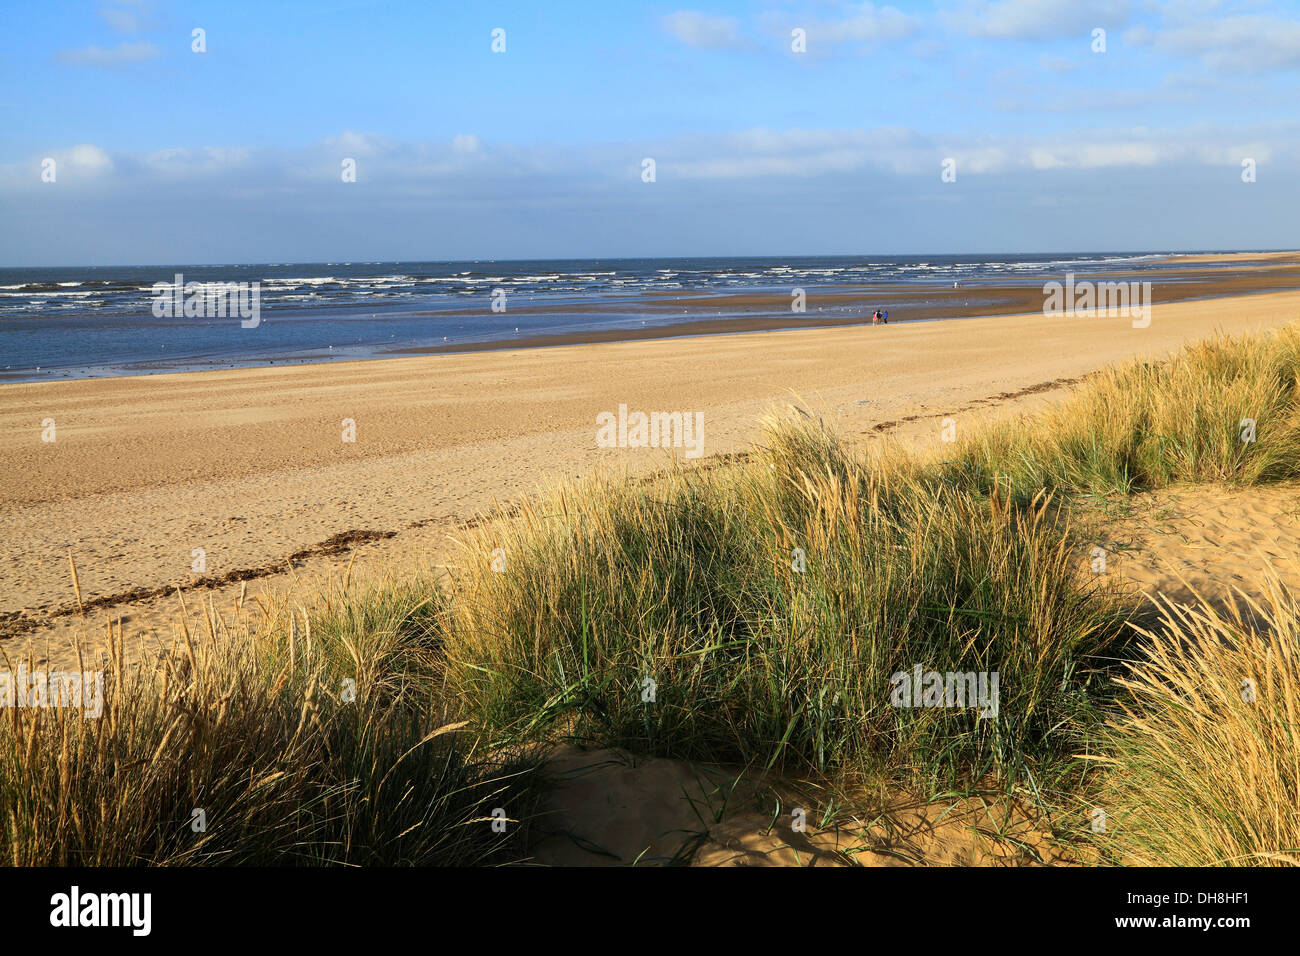 Old Hunstanton beach, dune di sabbia, costa del Mare del Nord NORFOLK REGNO UNITO Inghilterra spiagge sabbiose coste Foto Stock